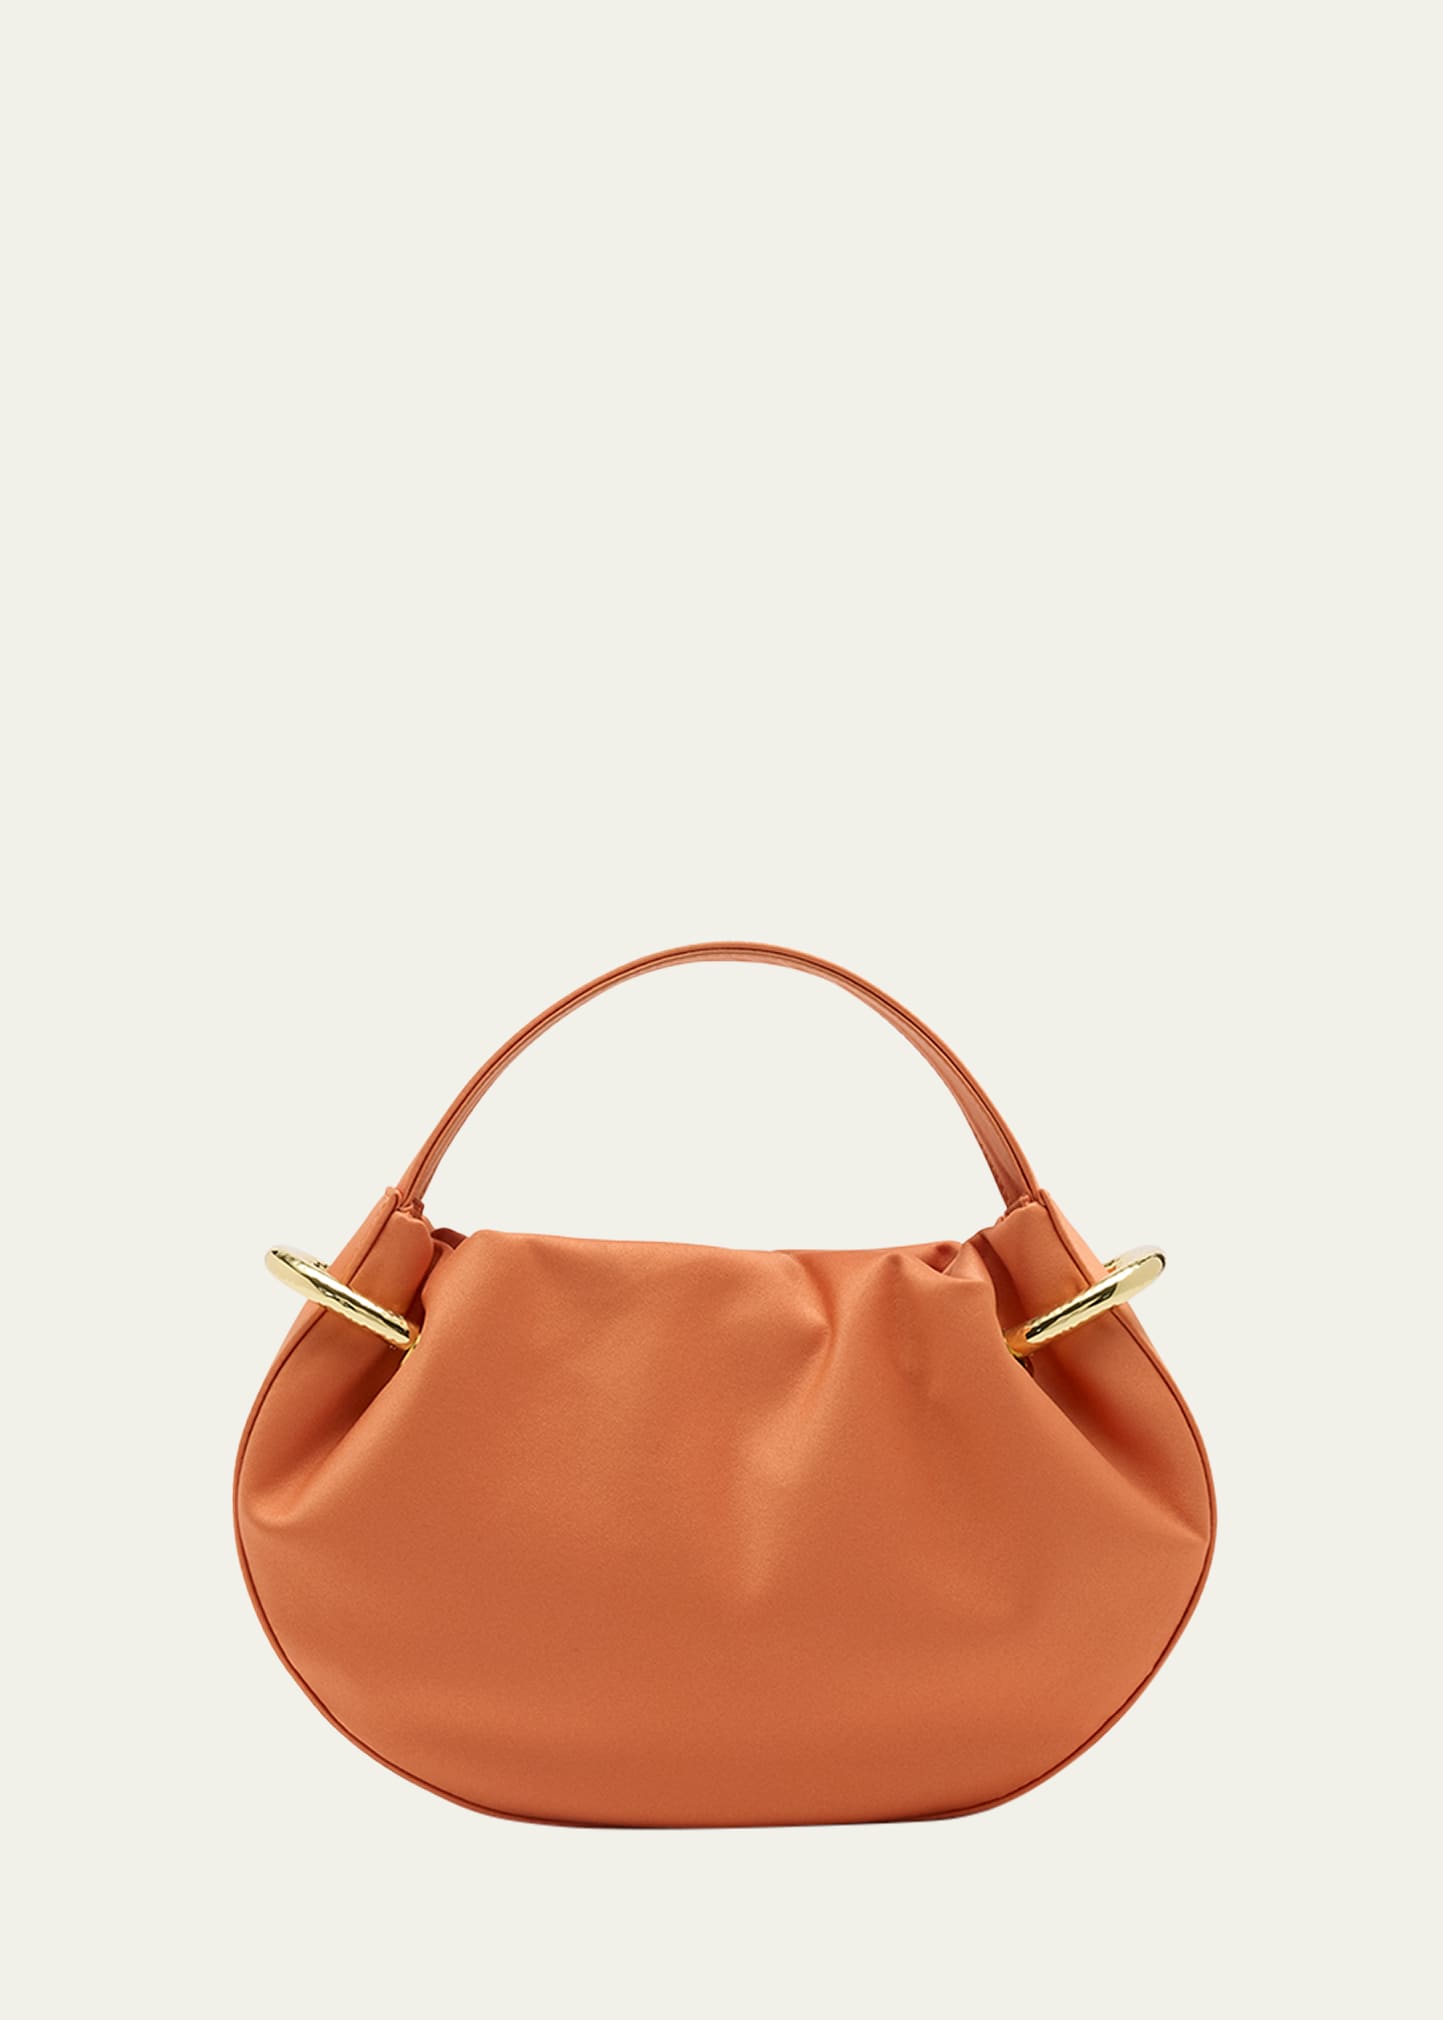 Tilda Mini Ruched Top-Handle Bag